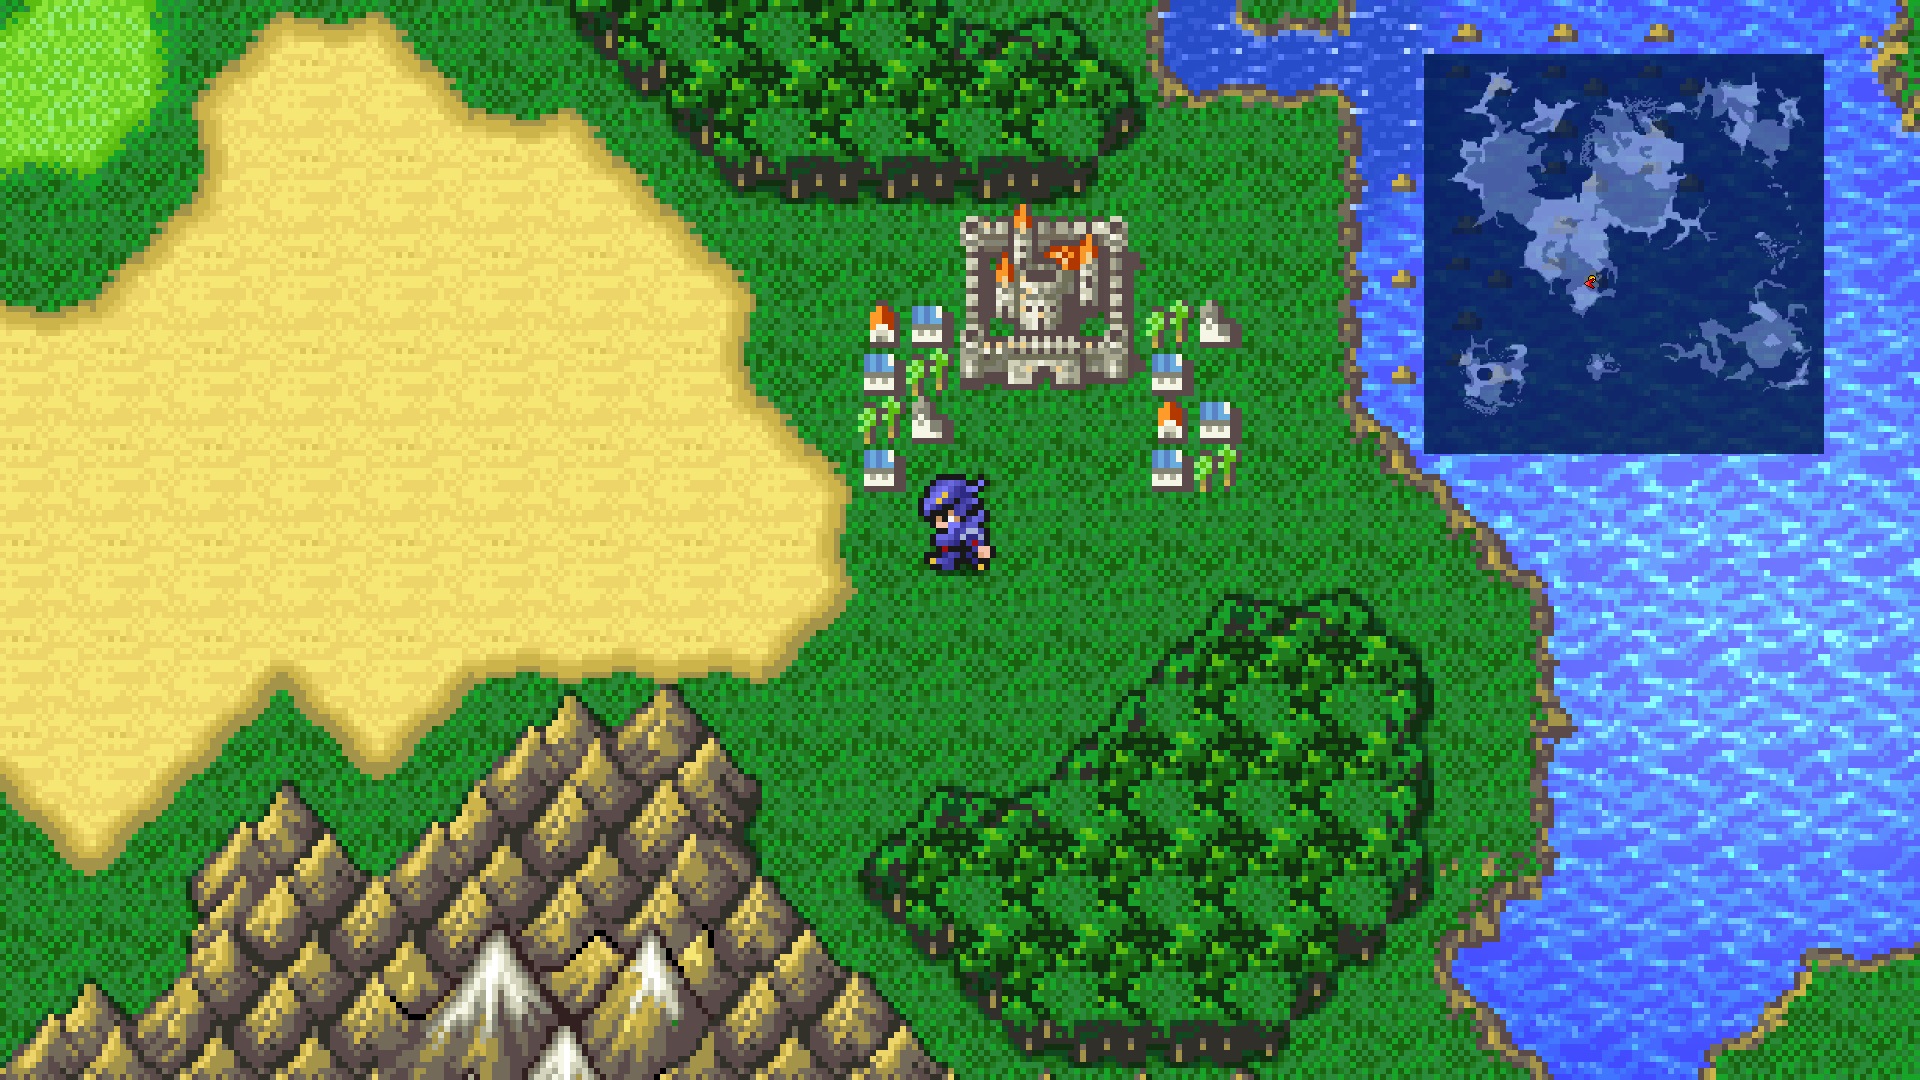 Captură de ecran de joc care arată Dark Knight Cecil de la Final Fantasy 4 pe o hartă mondială lângă un oraș